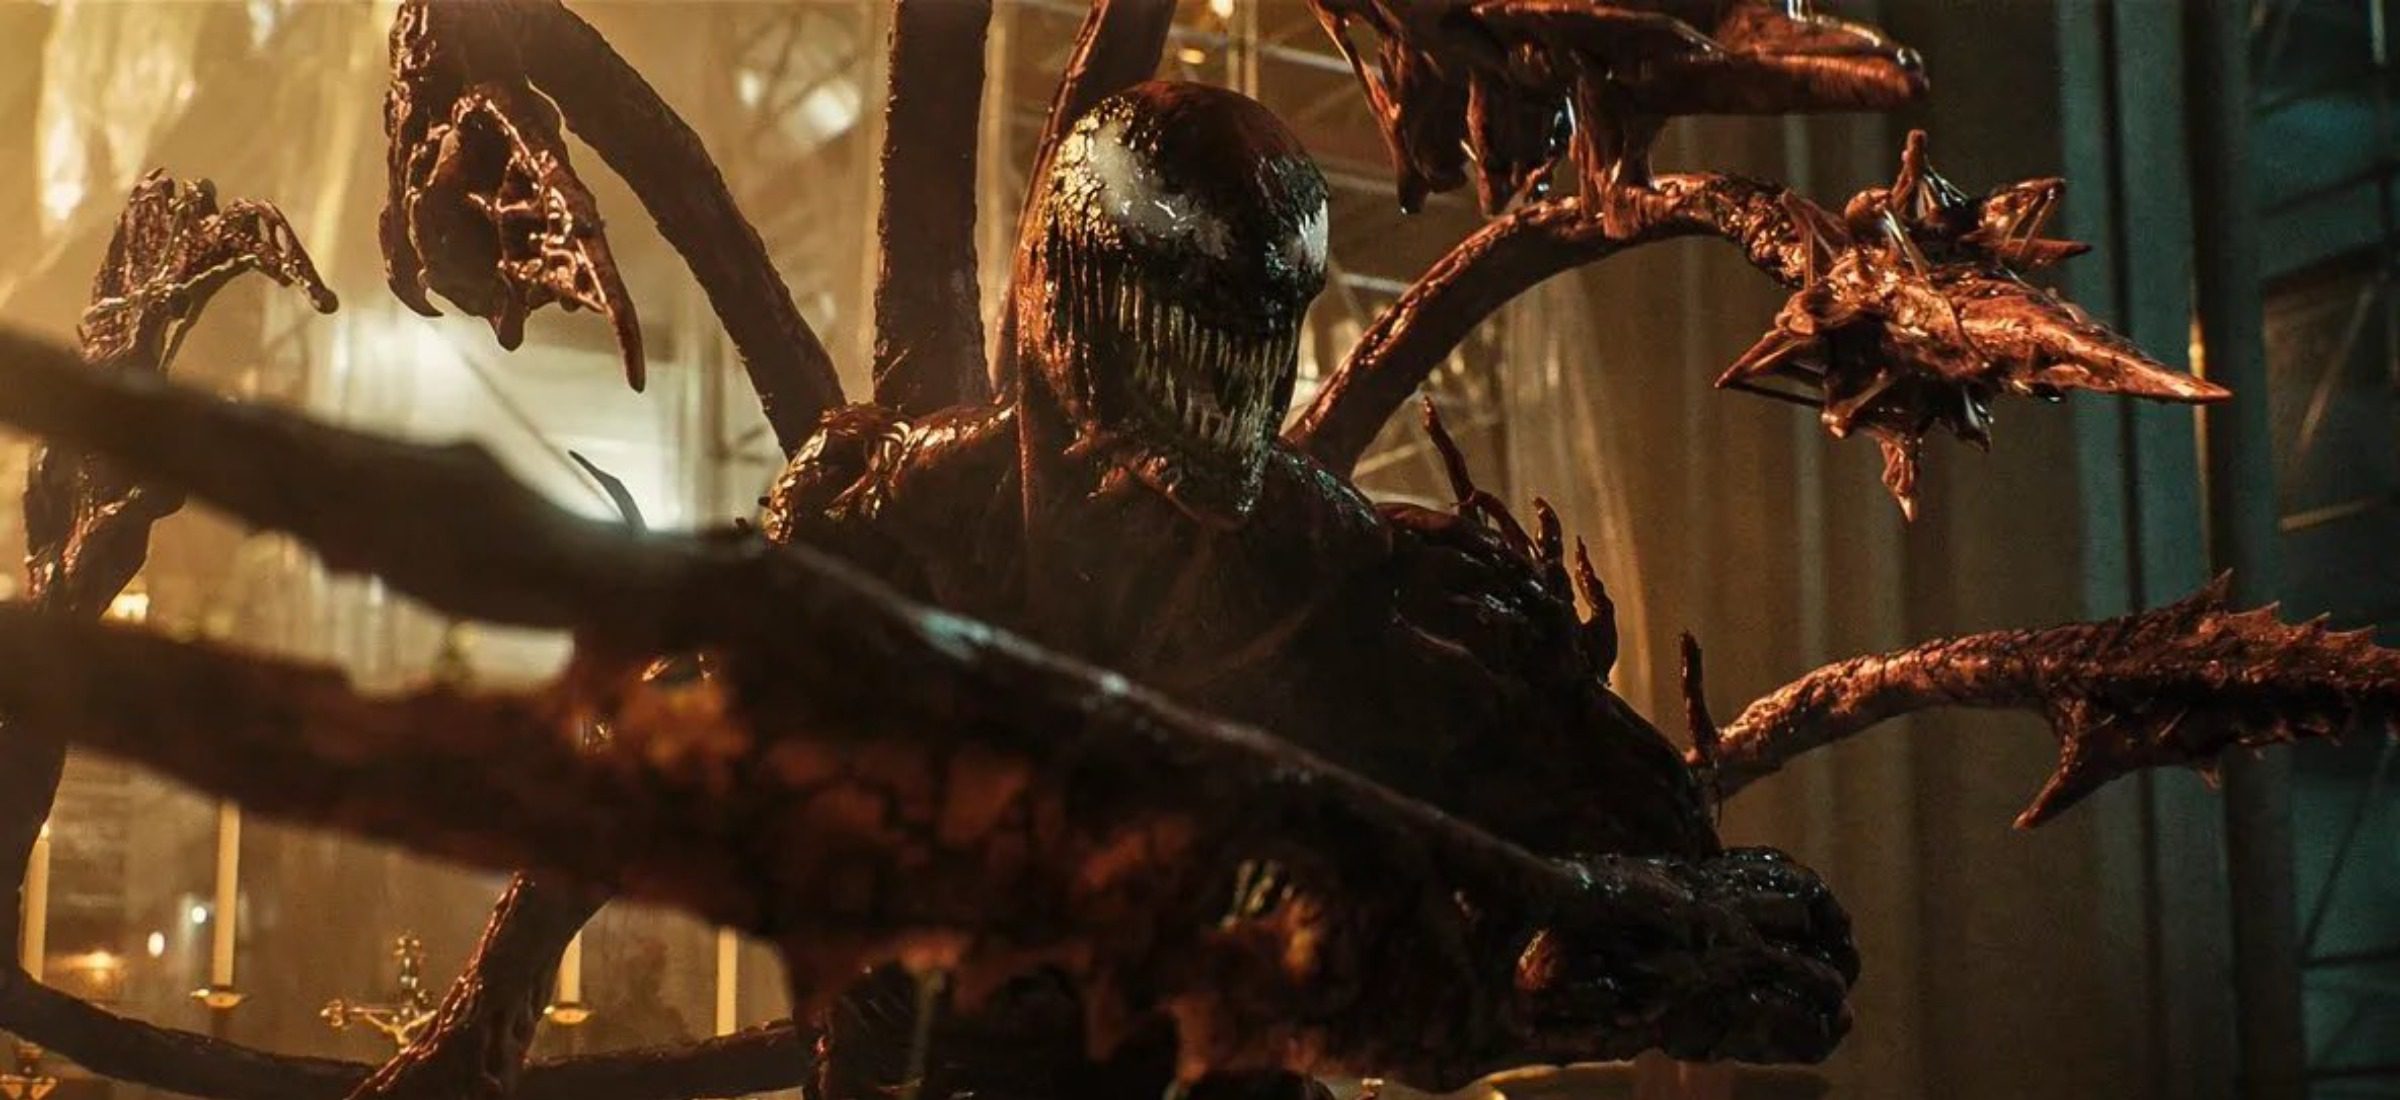 Auf "Venom 2" werden wir noch viel länger warten. Sony ändert den Namen seines Spinnenuniversums 13